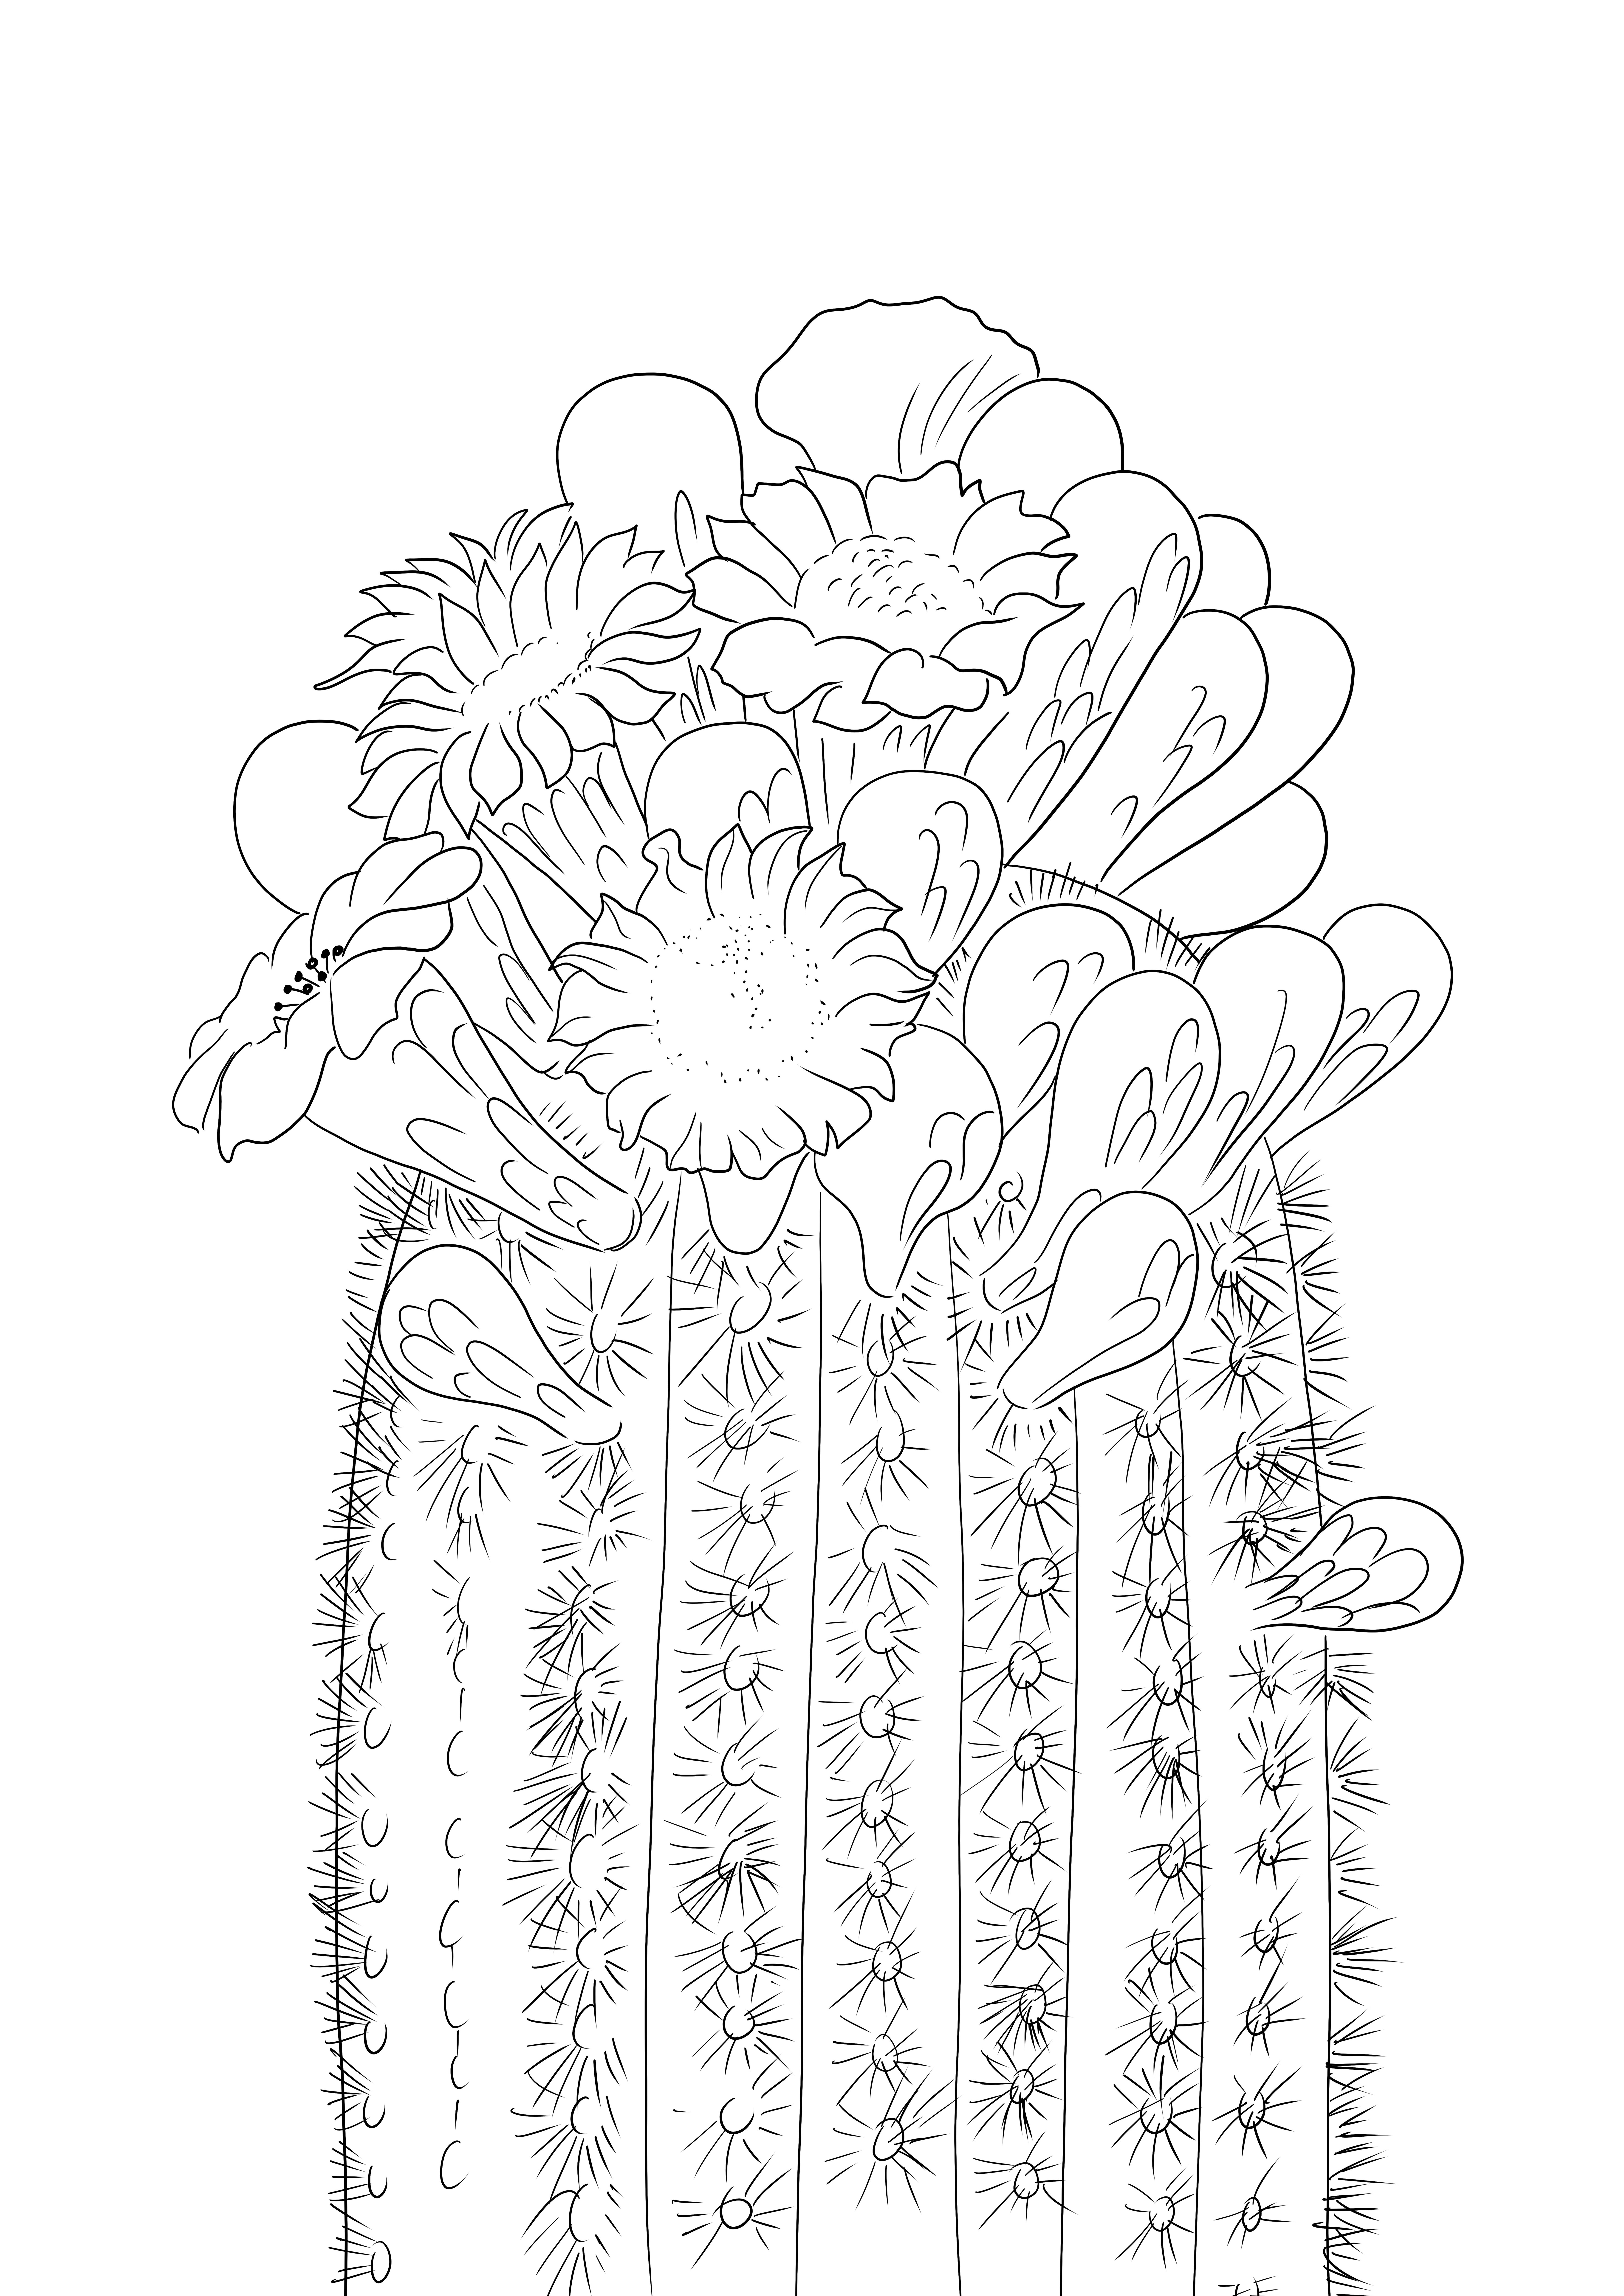 Uma linda imagem para colorir Flor de cacto Saguaro grátis para imprimir ou baixar.